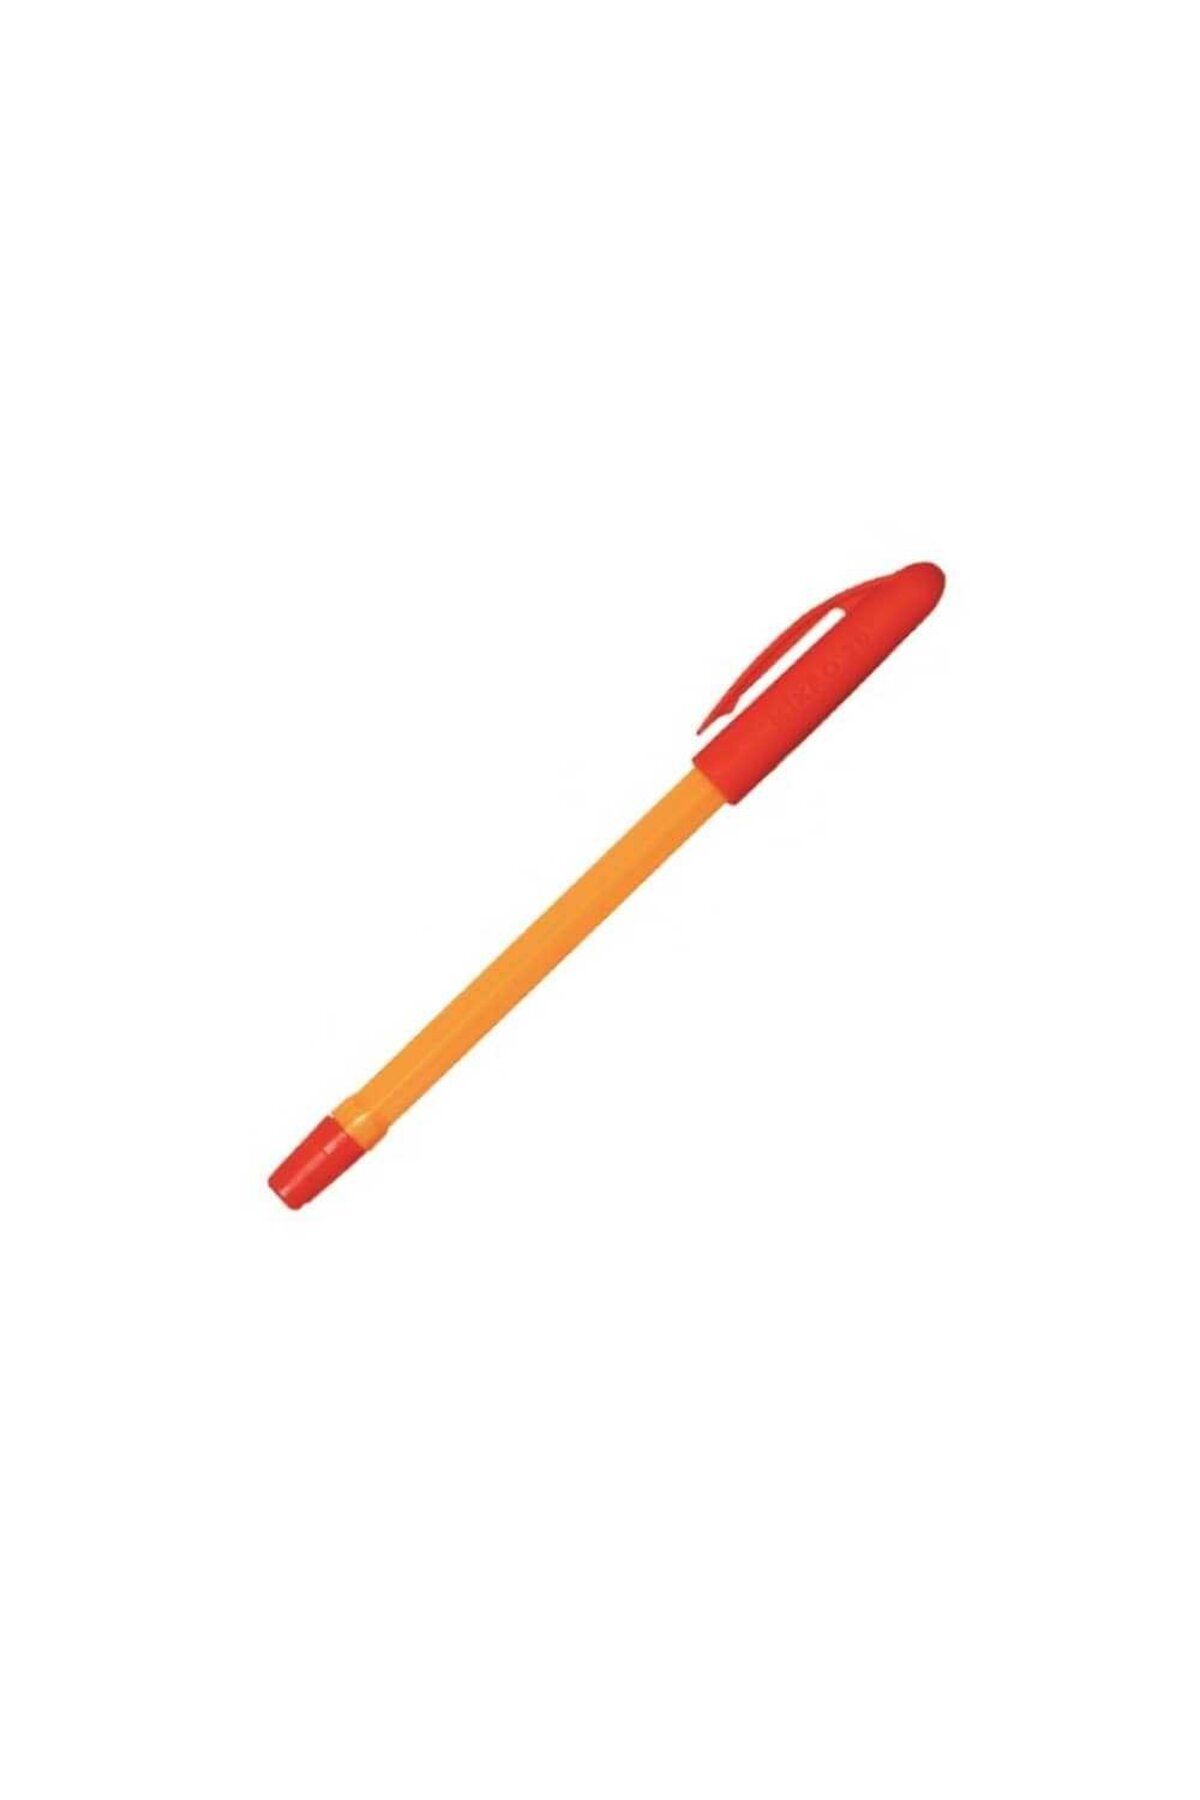 Mikro M-30 Tükenmez Kalem Kırmızı